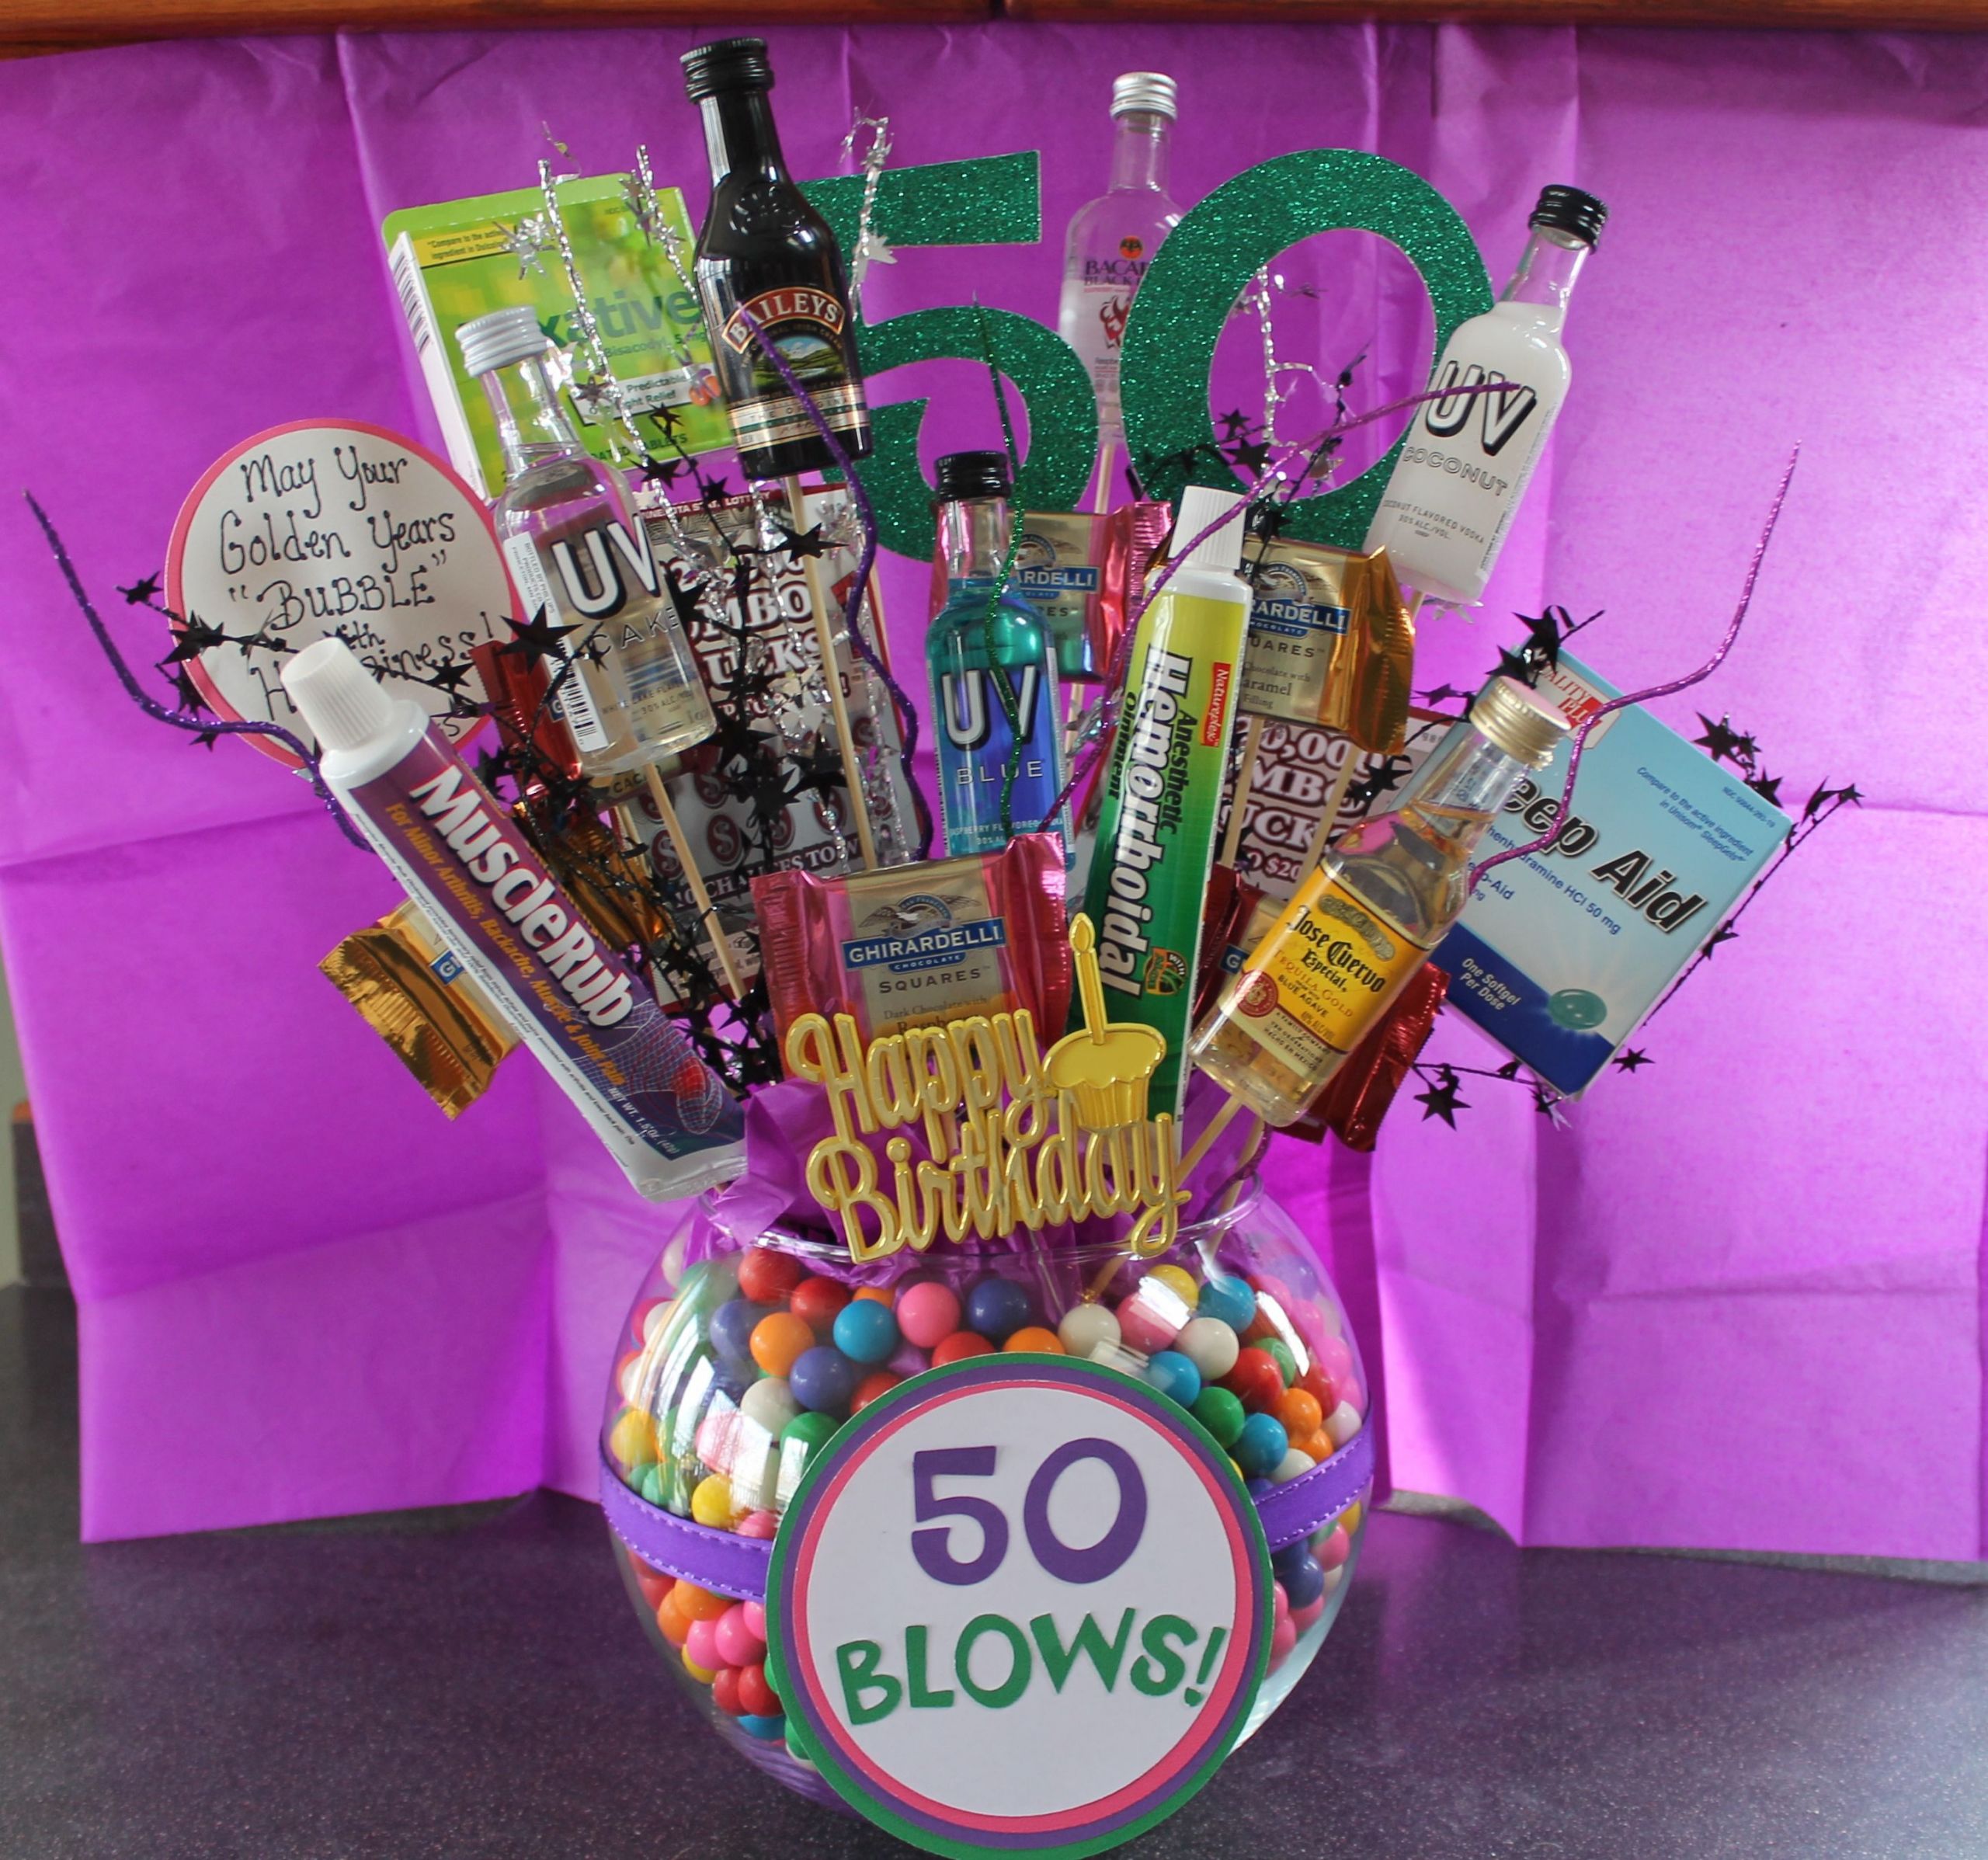 Fiftieth Birthday Gift Ideas
 DIY Crafty Projects 50th Birthday Gift Ideas DIY